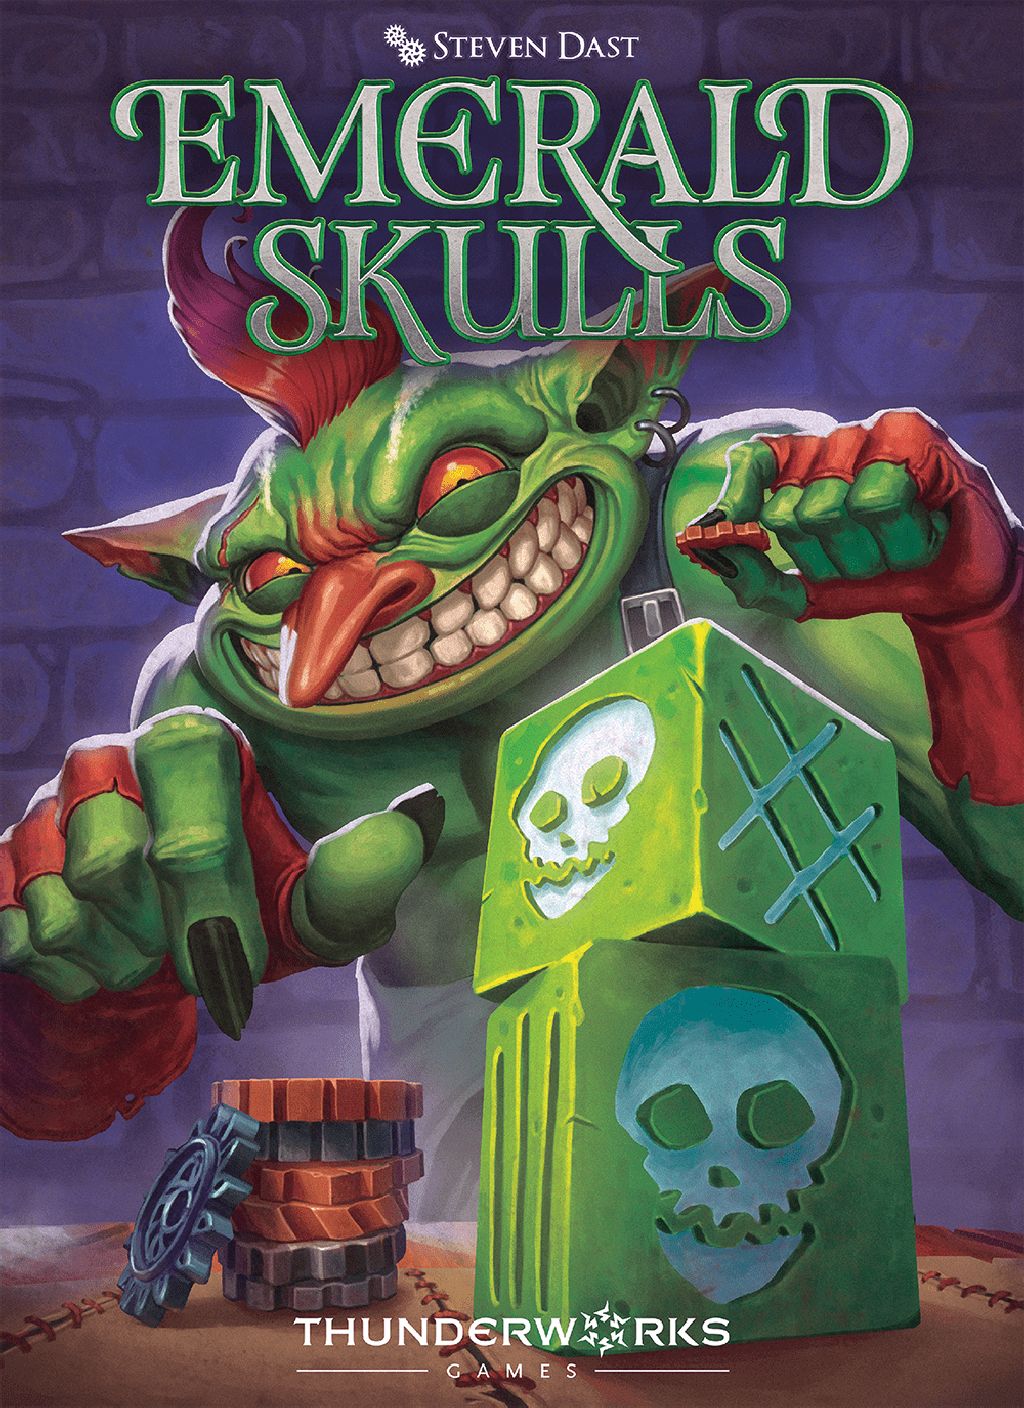 okładka gry Emerald skulls